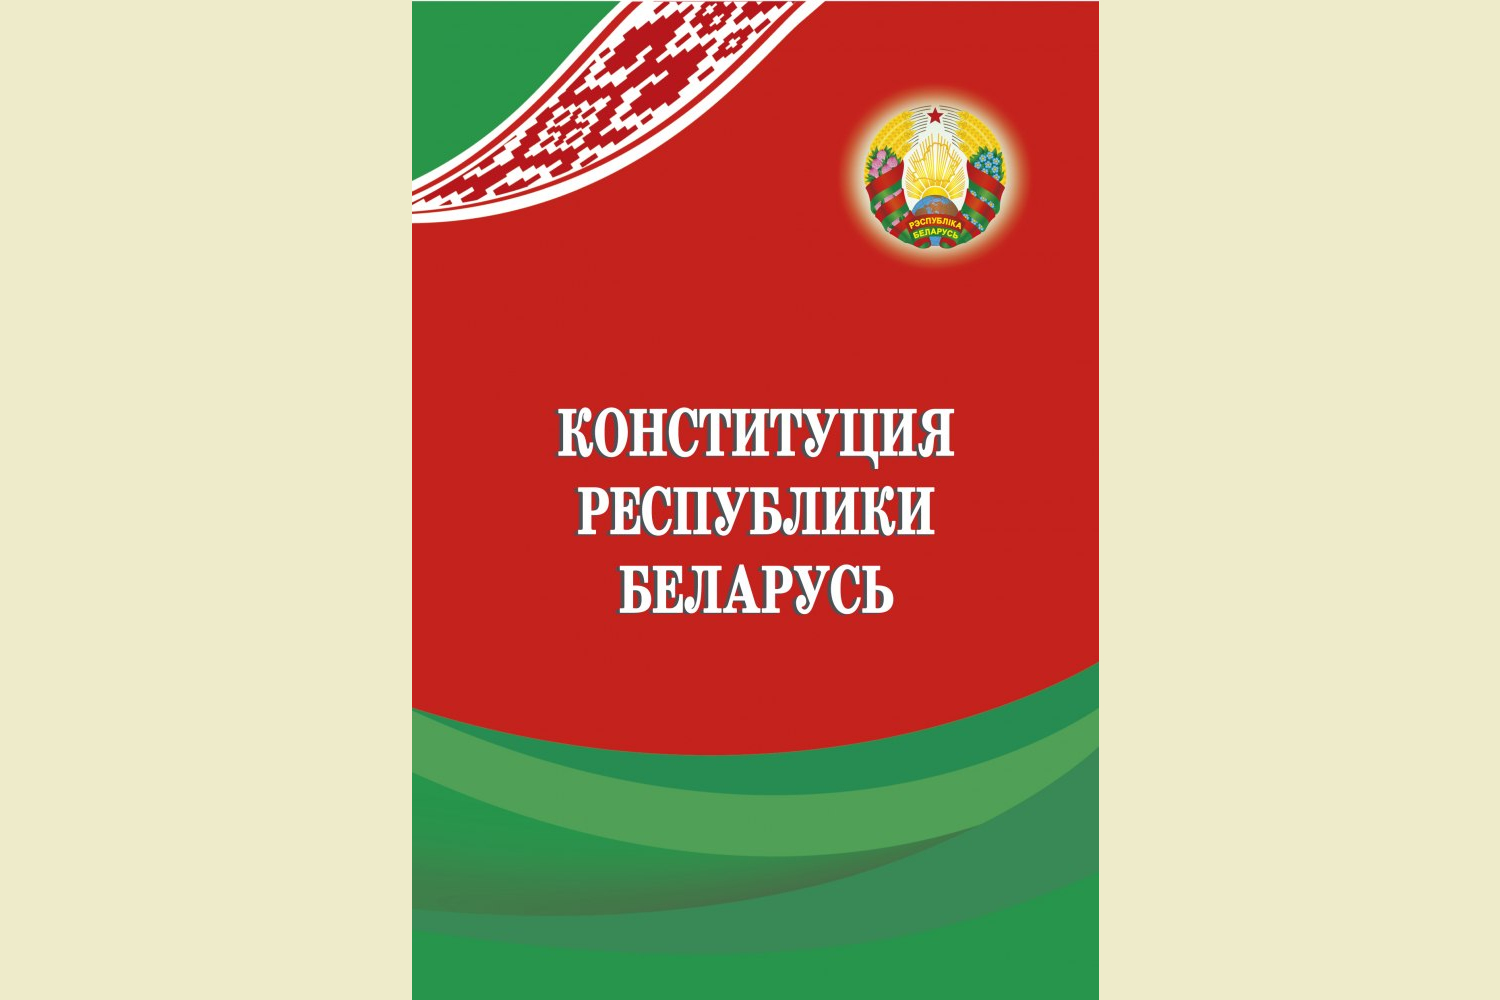 30 лет основному закону страны — Конституции Республики Беларусь.